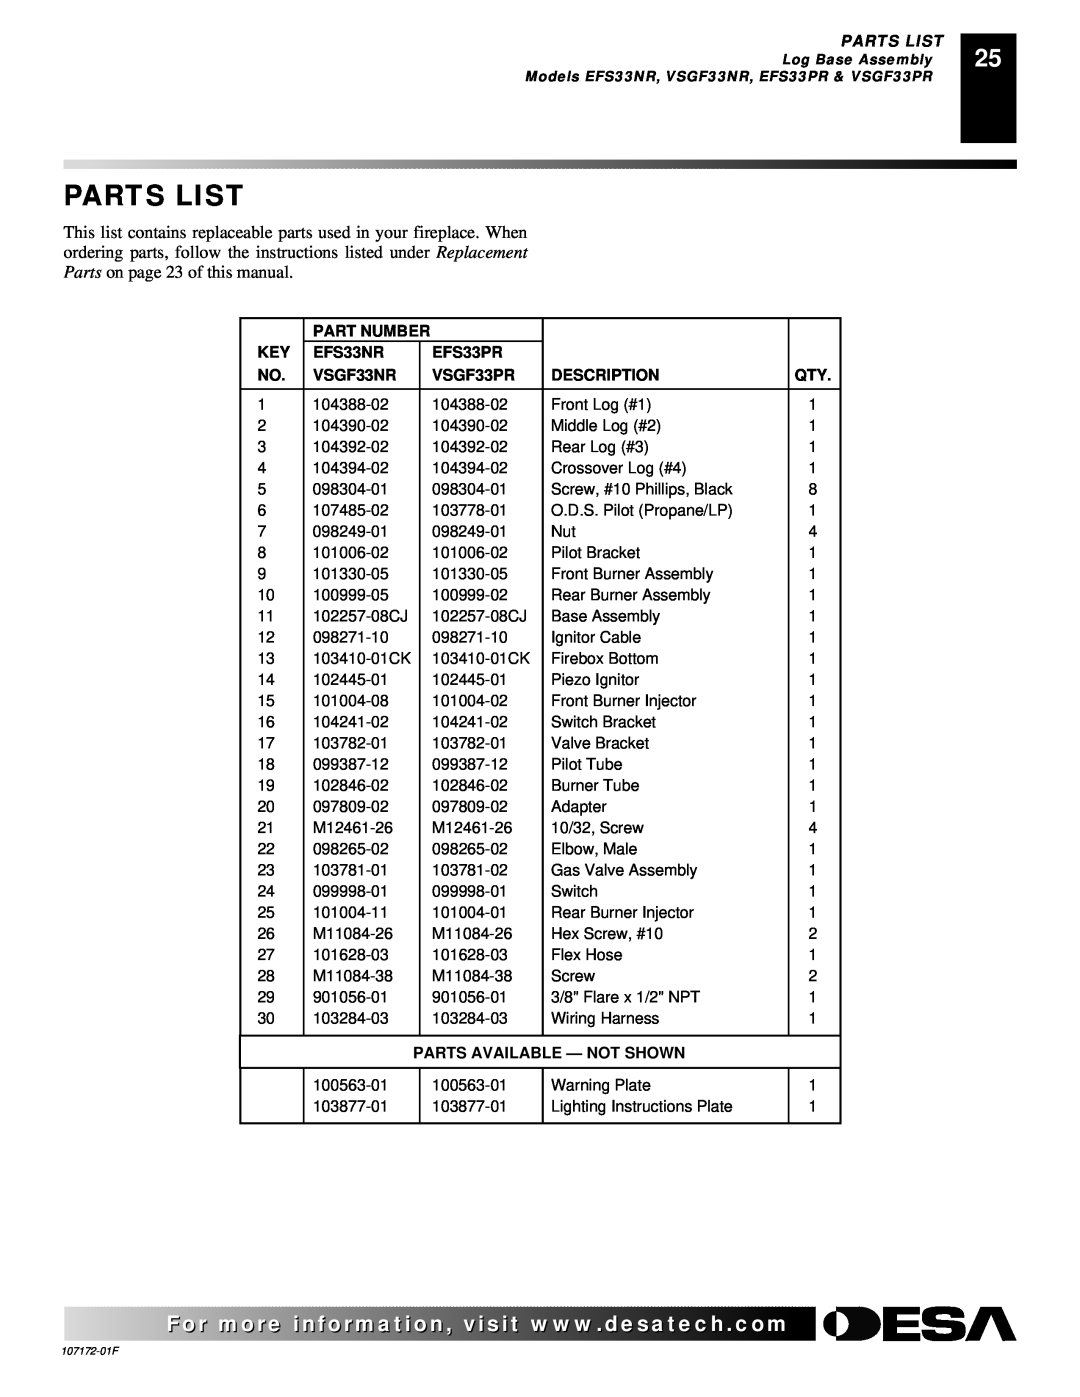 Desa EFS33PR Parts List, Part Number, EFS33NR, VSGF33NR, VSGF33PR, Description, Parts Available - Not Shown 